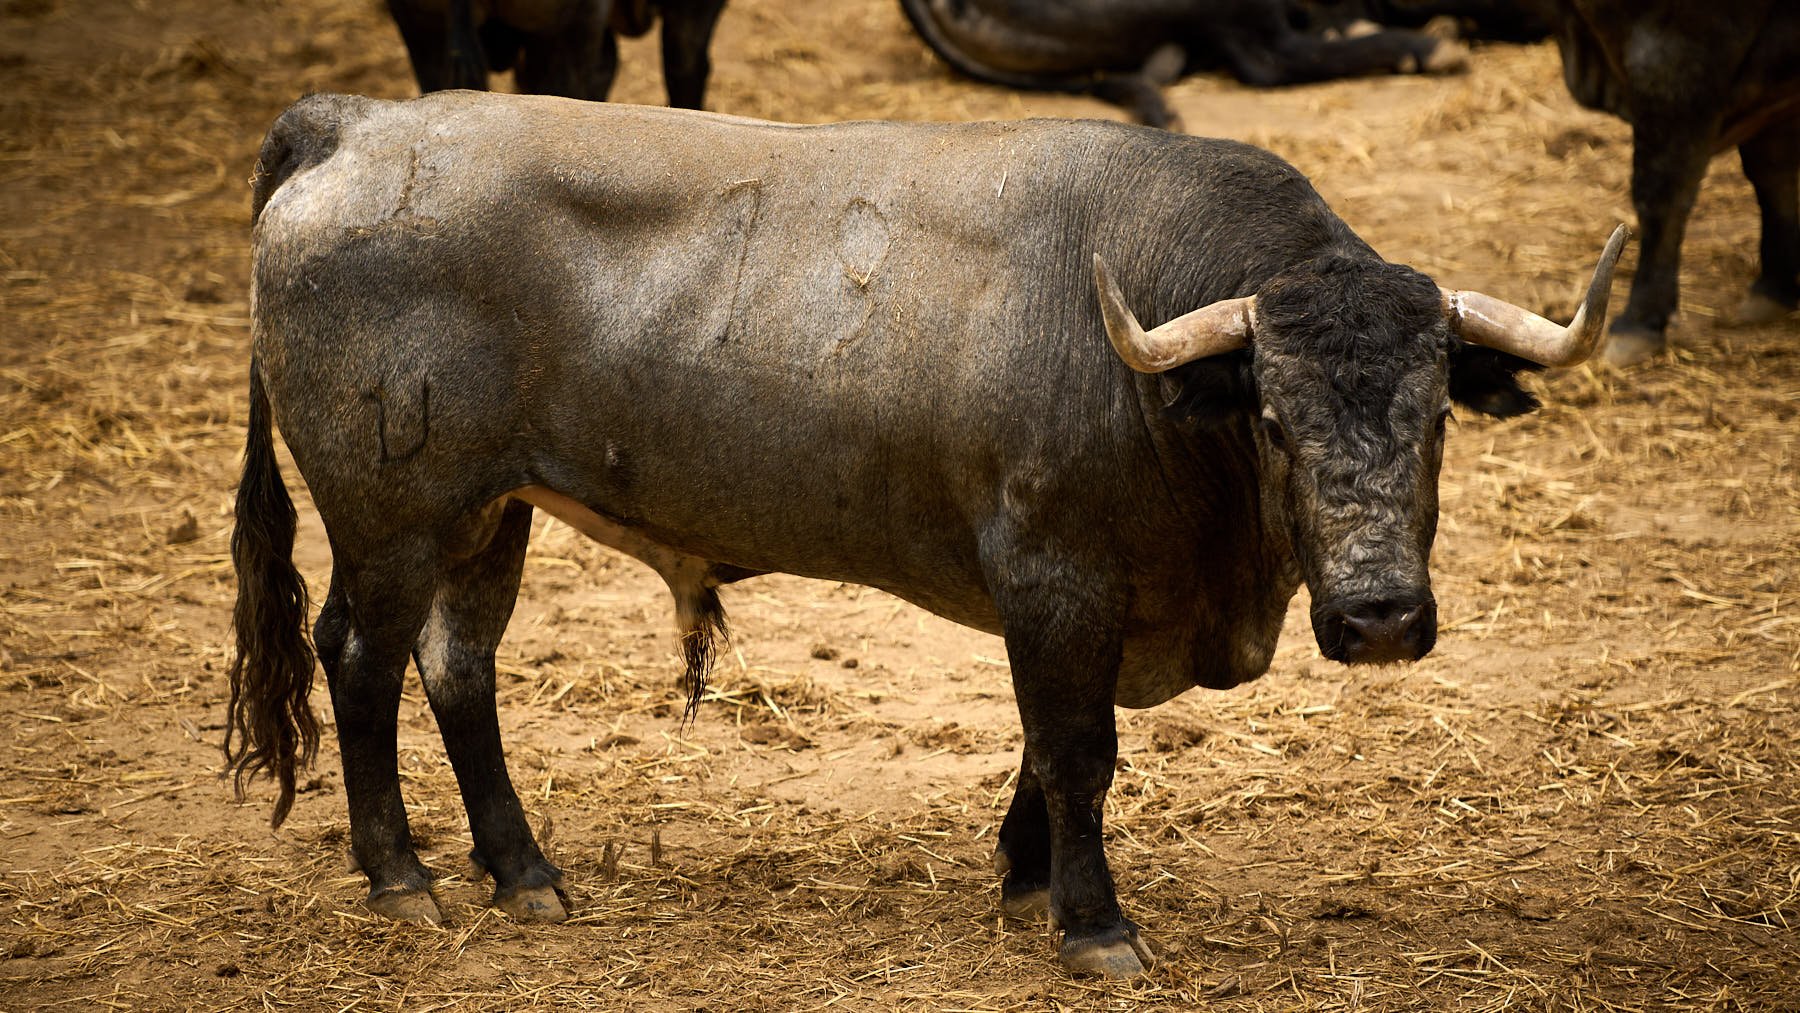 El toro 'Casillero' (nº19) de la ganadería de José Escolar Gil (8 de julio) y de 550 kilos de peso en los corrales del Gas de Pamplona. PABLO LASAOSA